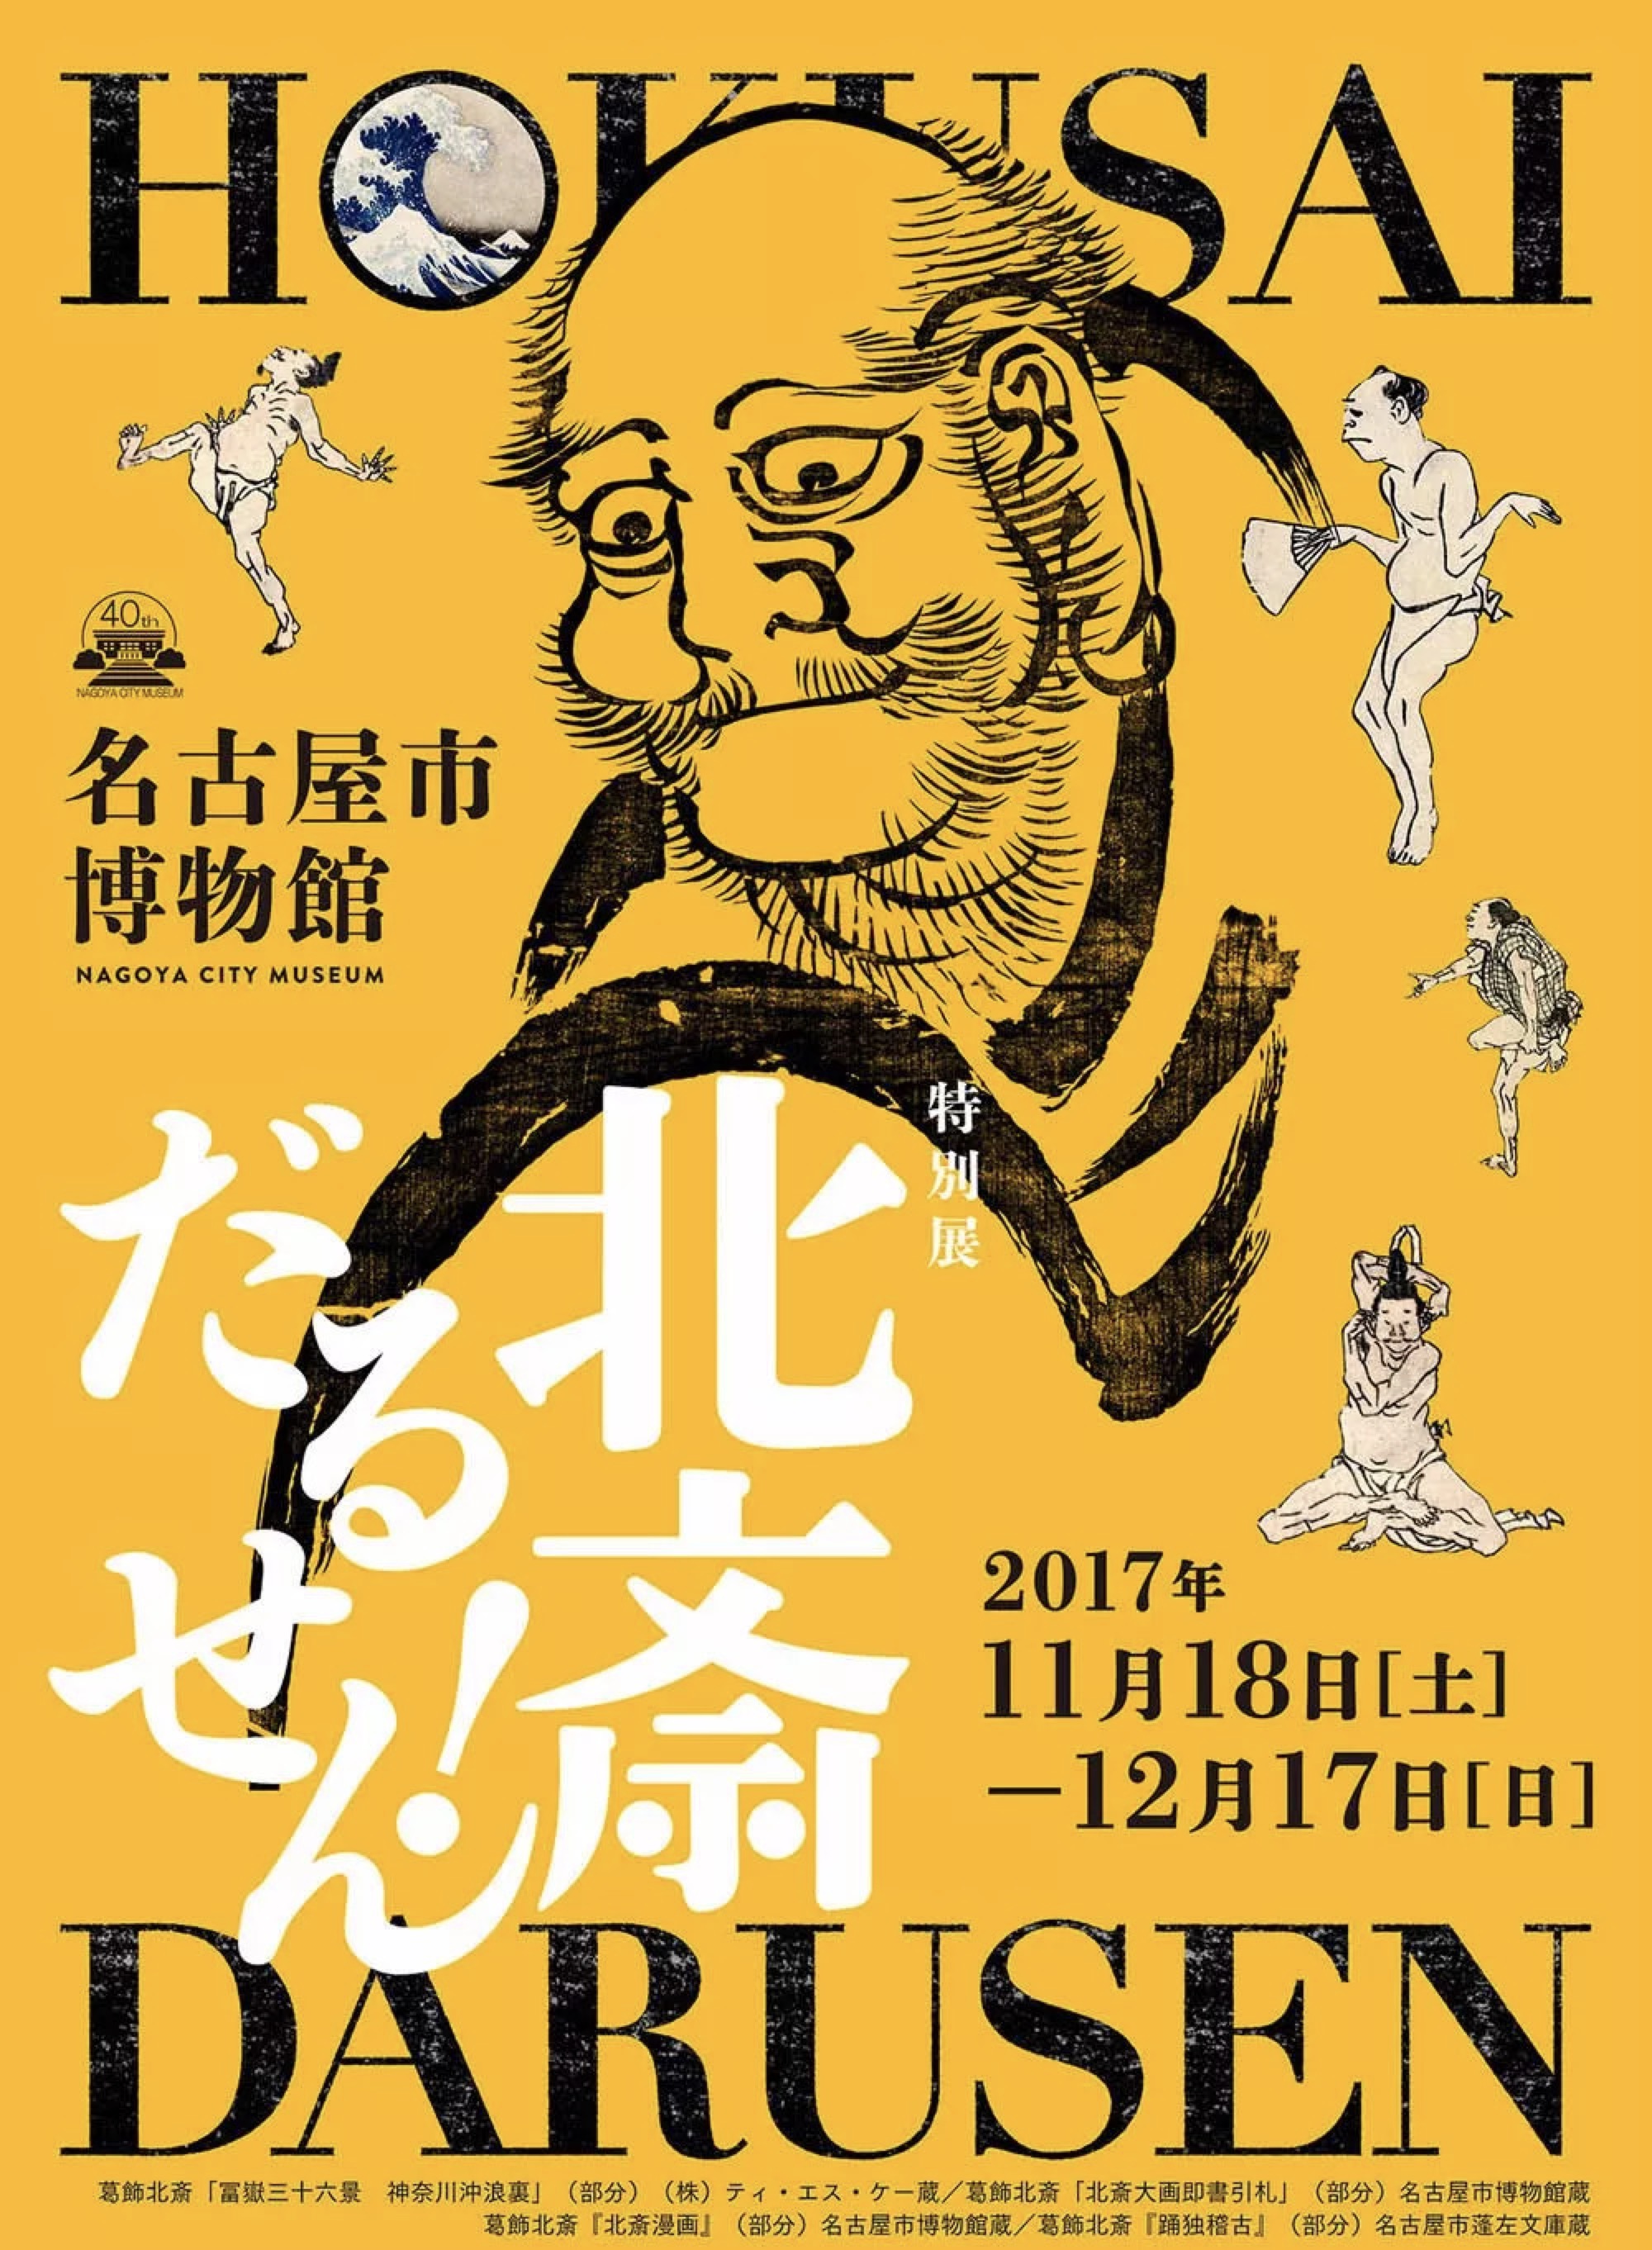 日本展览相关海报分享四次 古田路9号 品牌创意 版权保护平台